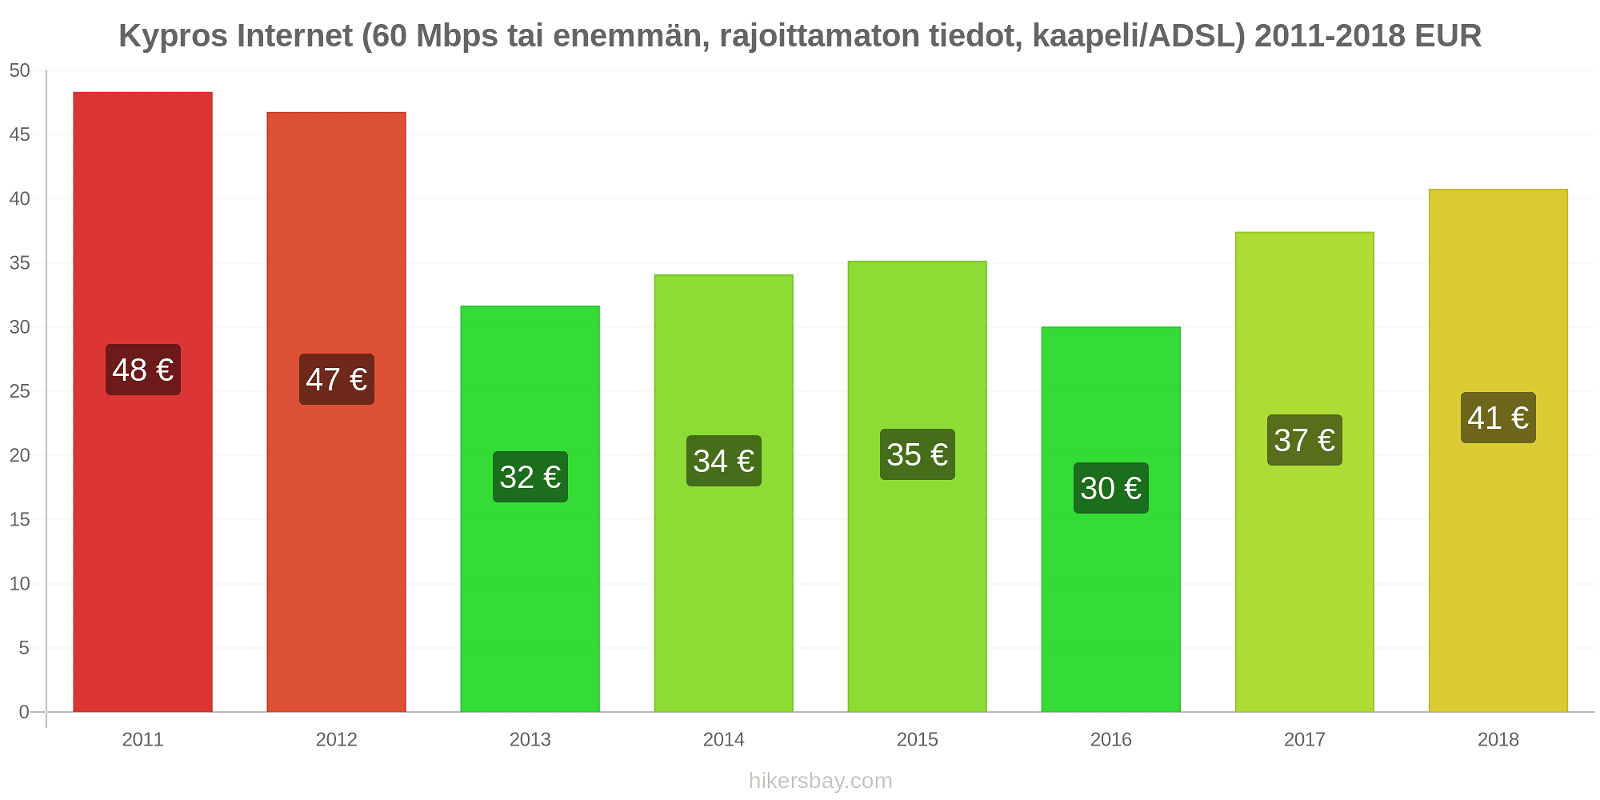 Kypros hintojen muutokset Internet (60 Mbps tai enemmän, rajoittamaton tiedot, kaapeli/ADSL) hikersbay.com